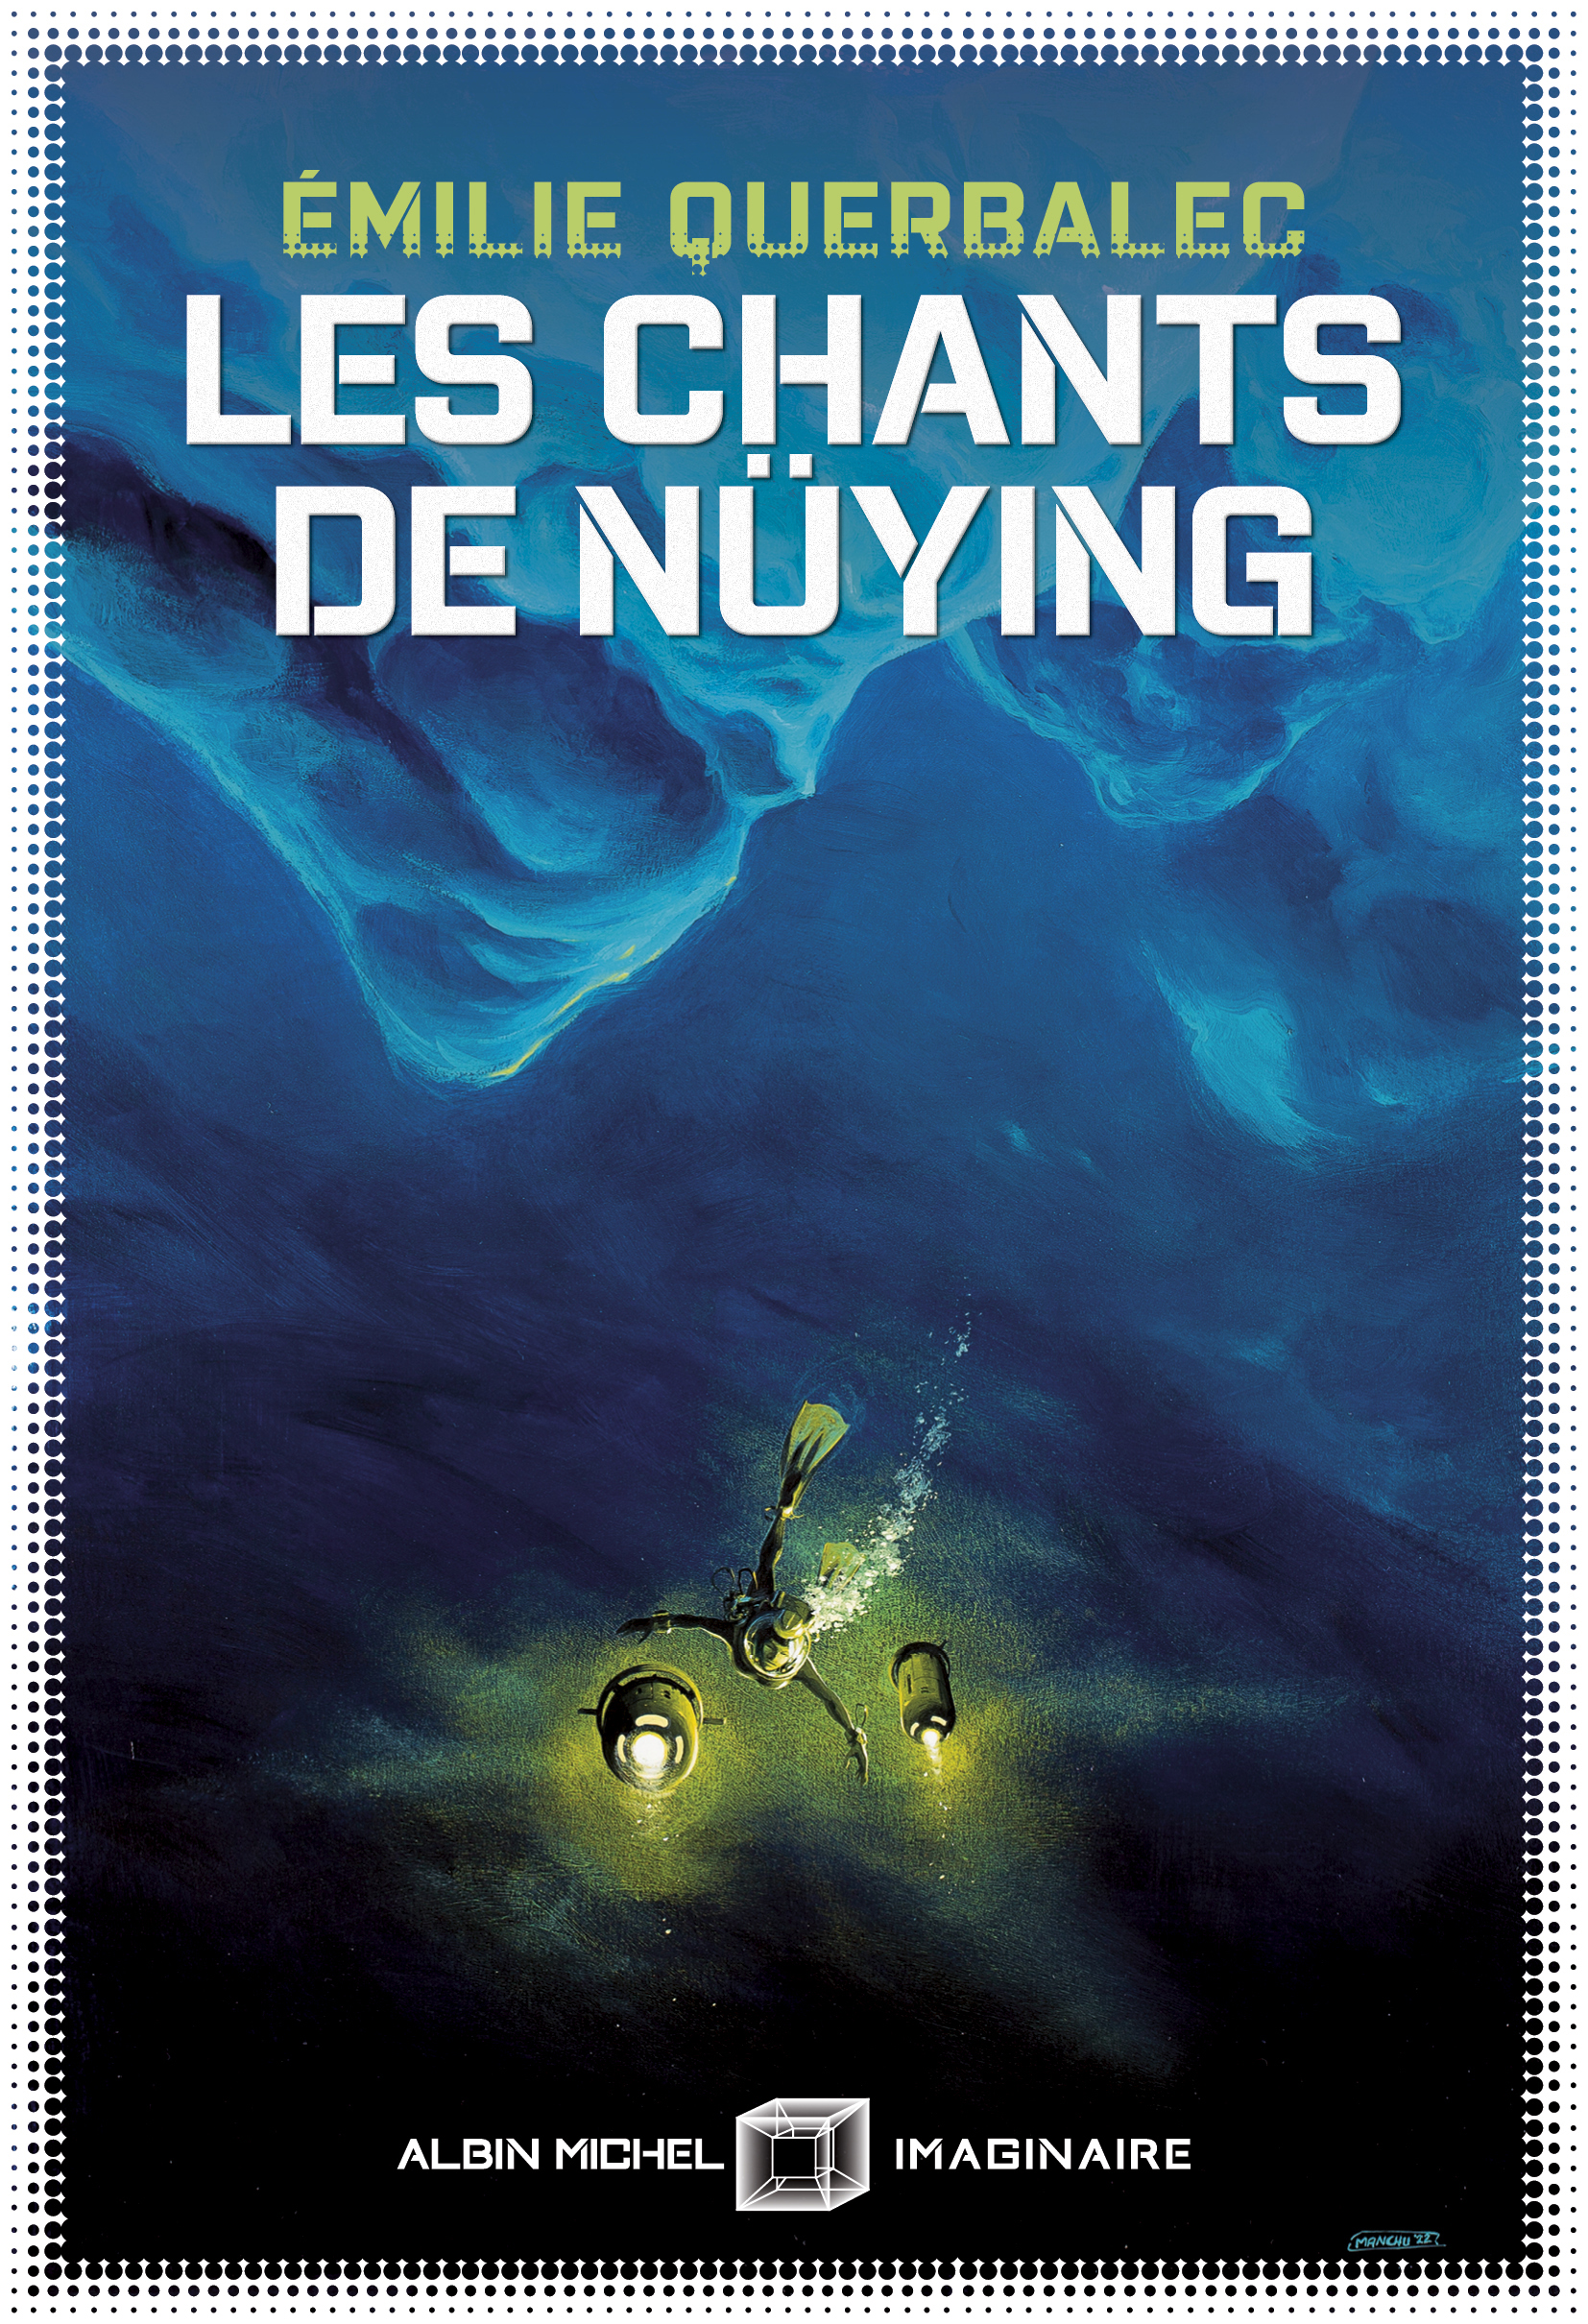 Couverture du livre Les Chants de Nüying